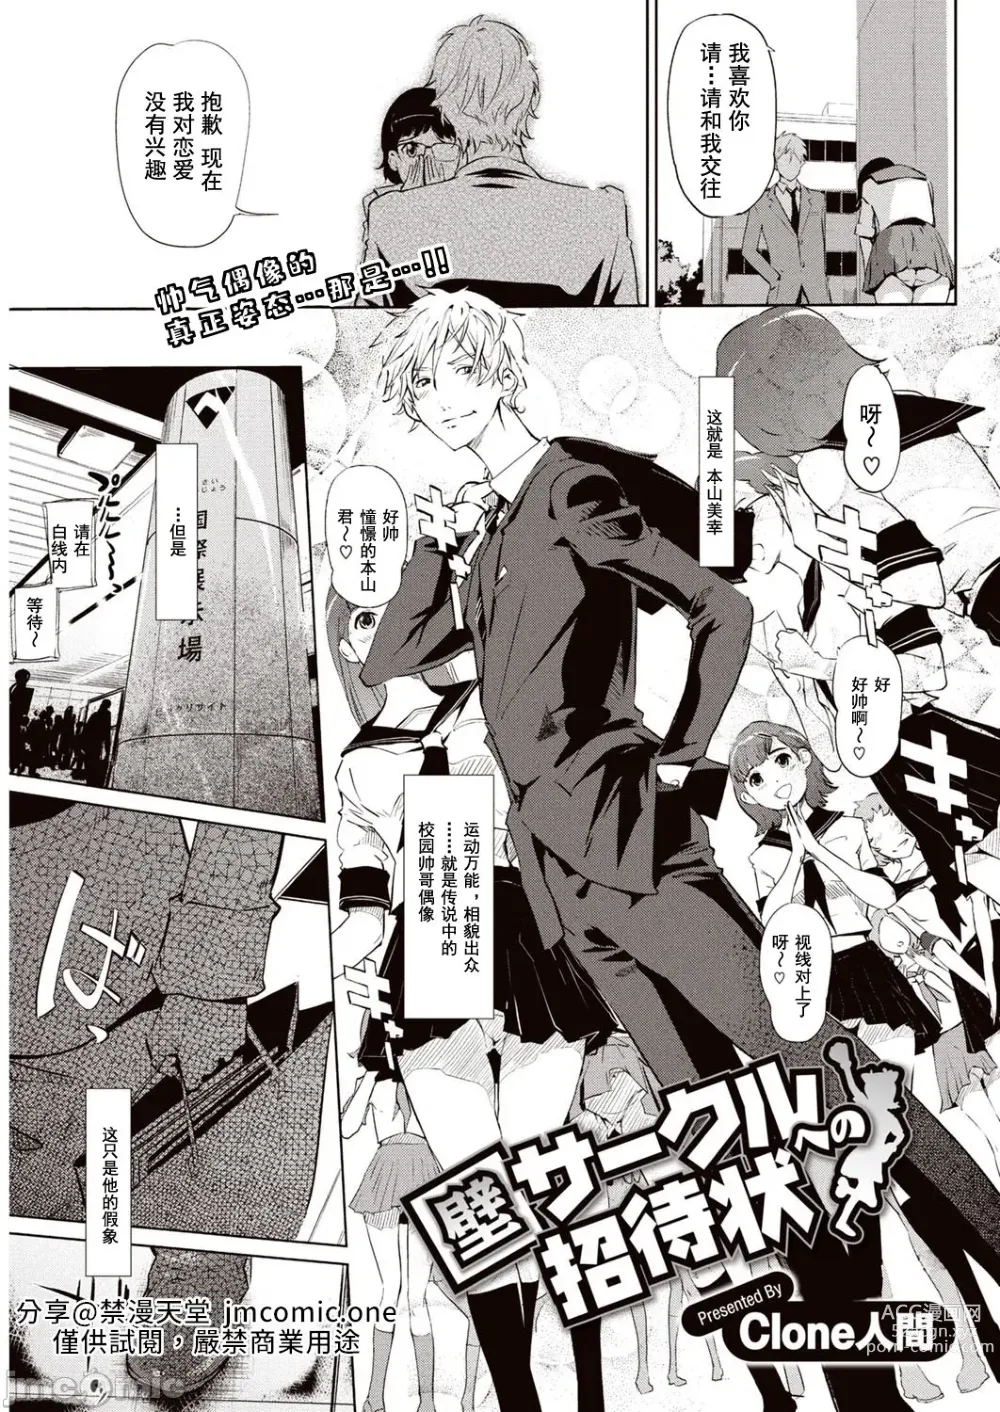 Page 2 of manga 賣作社團的招待券